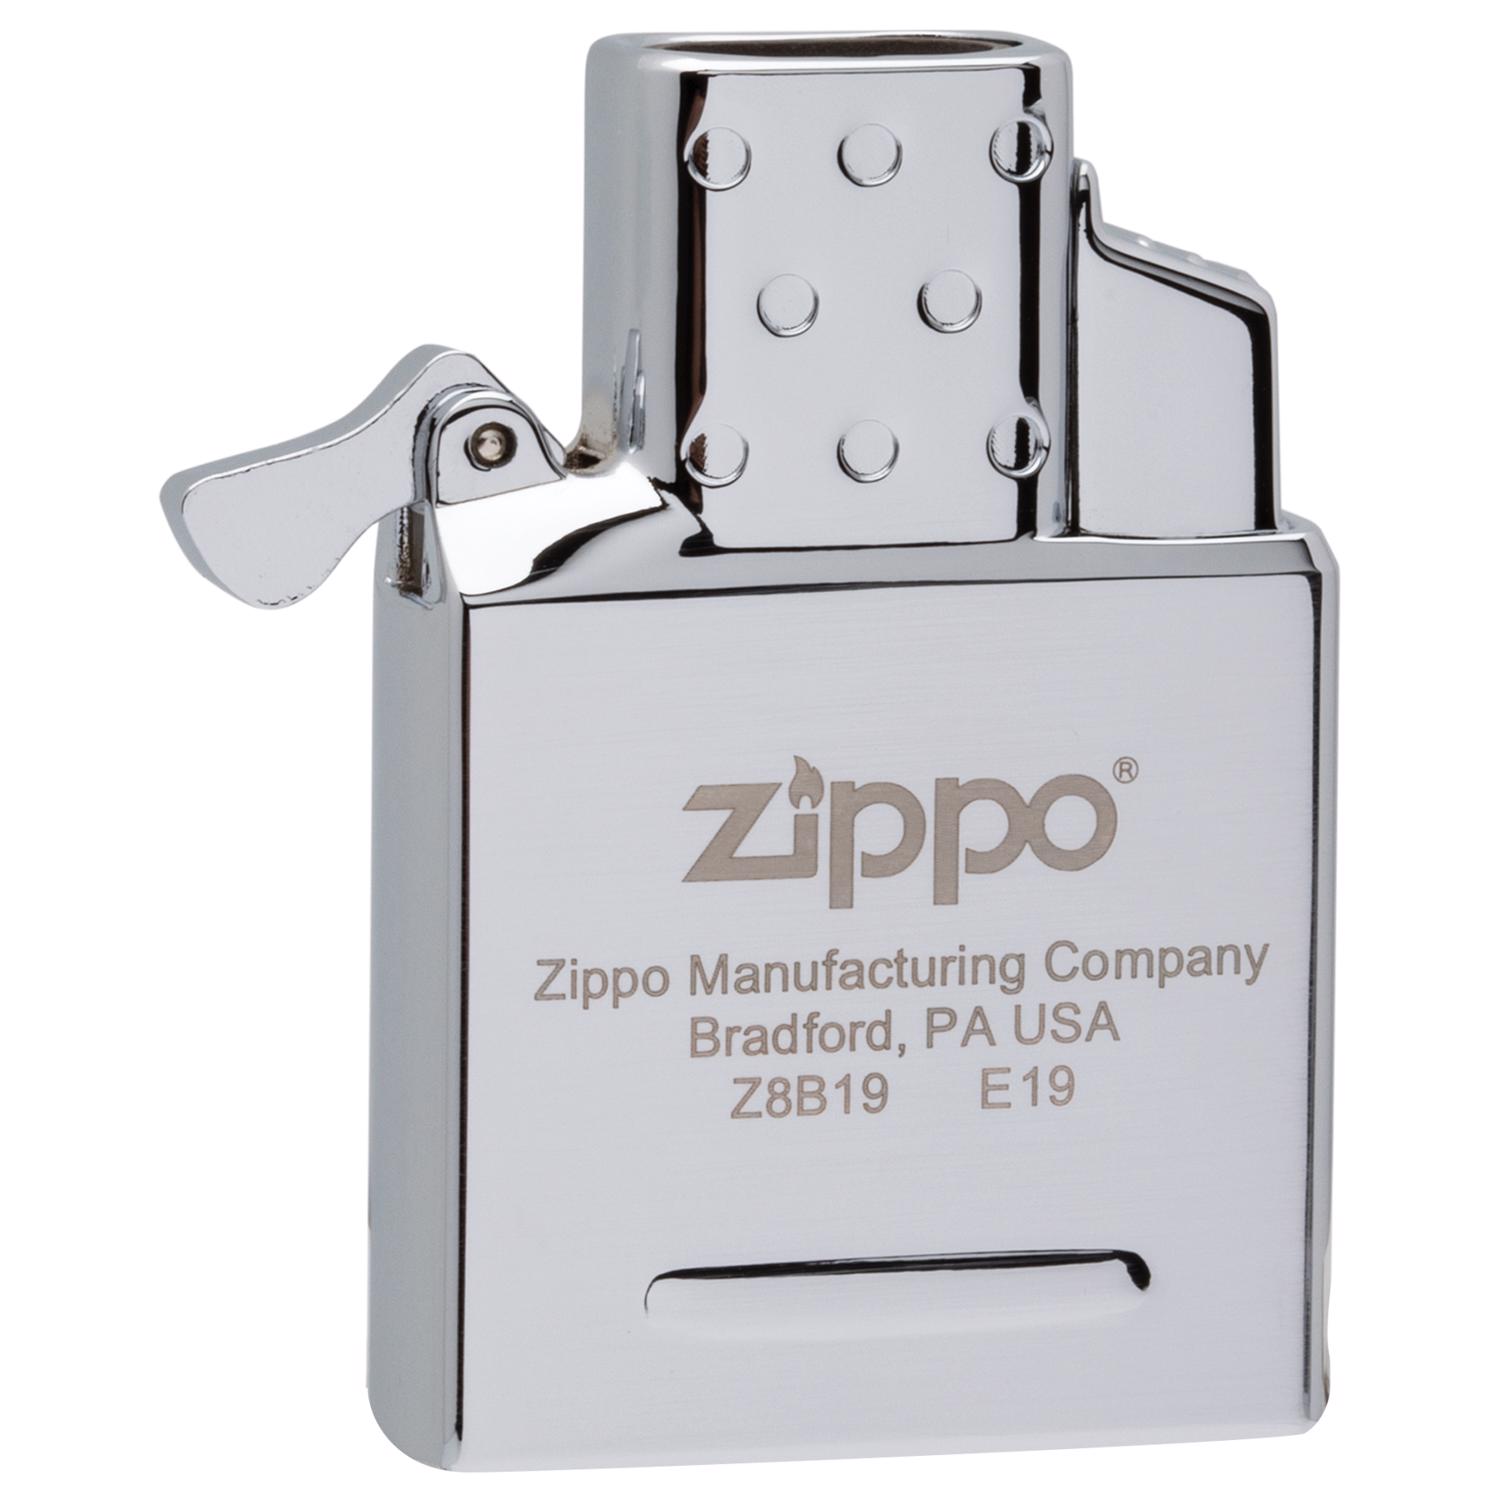 Zippo Single Torch Butane Lighter Insert - Stainless Steel : Target